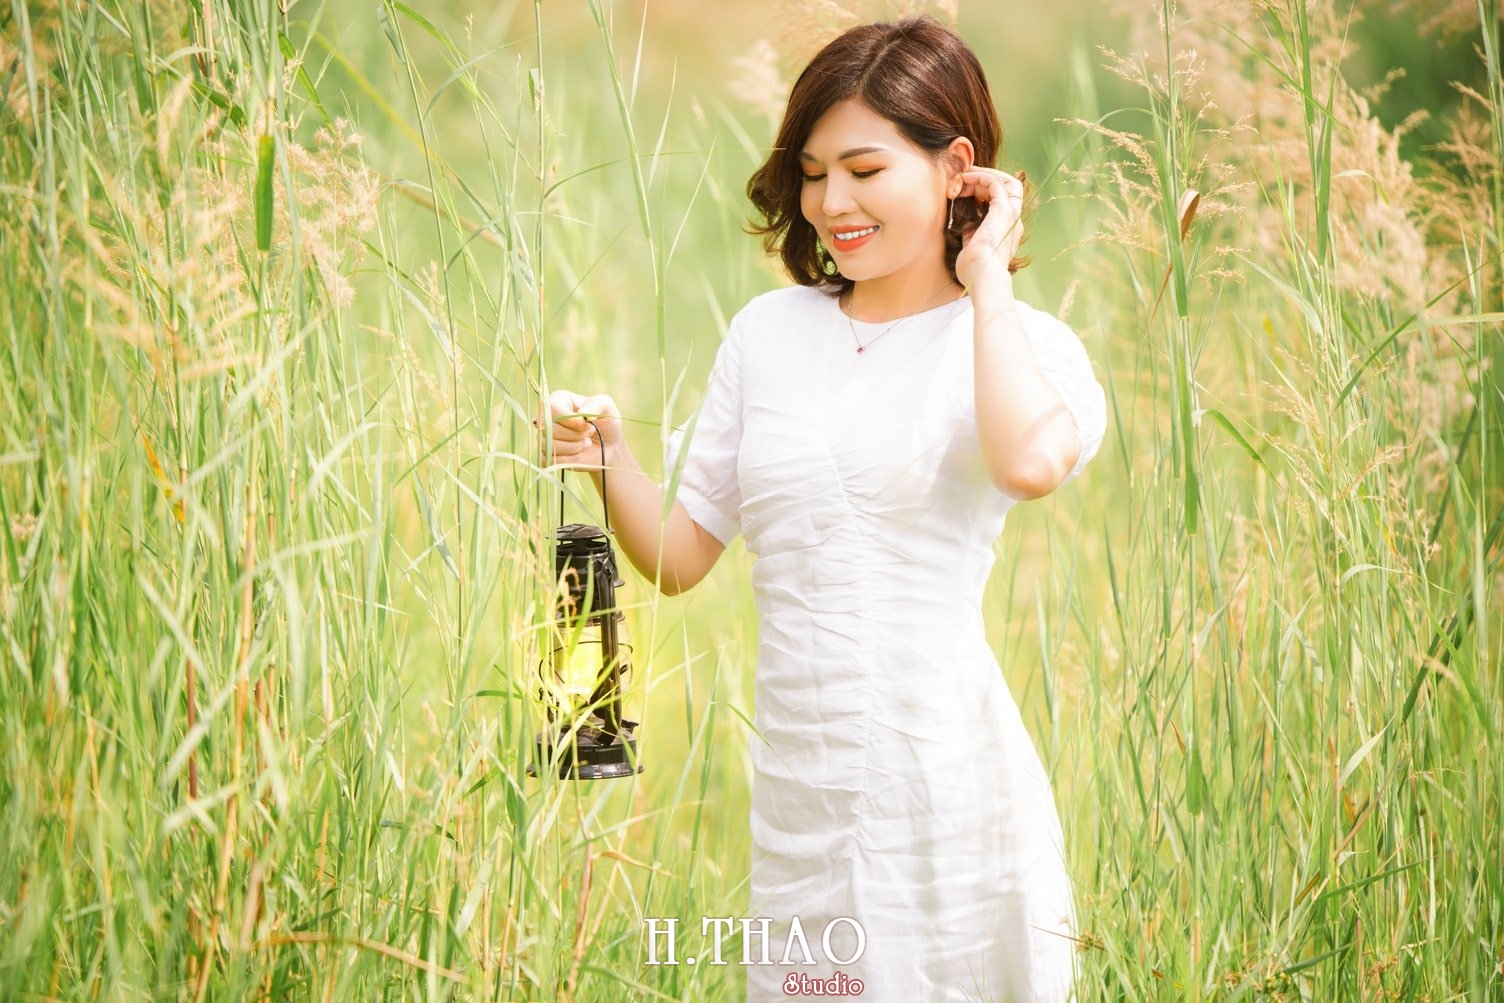 Canh Dong Co Lau 2 - Album ảnh chân dung nghệ thuật ngược nắng đẹp lung linh - HThao Studio